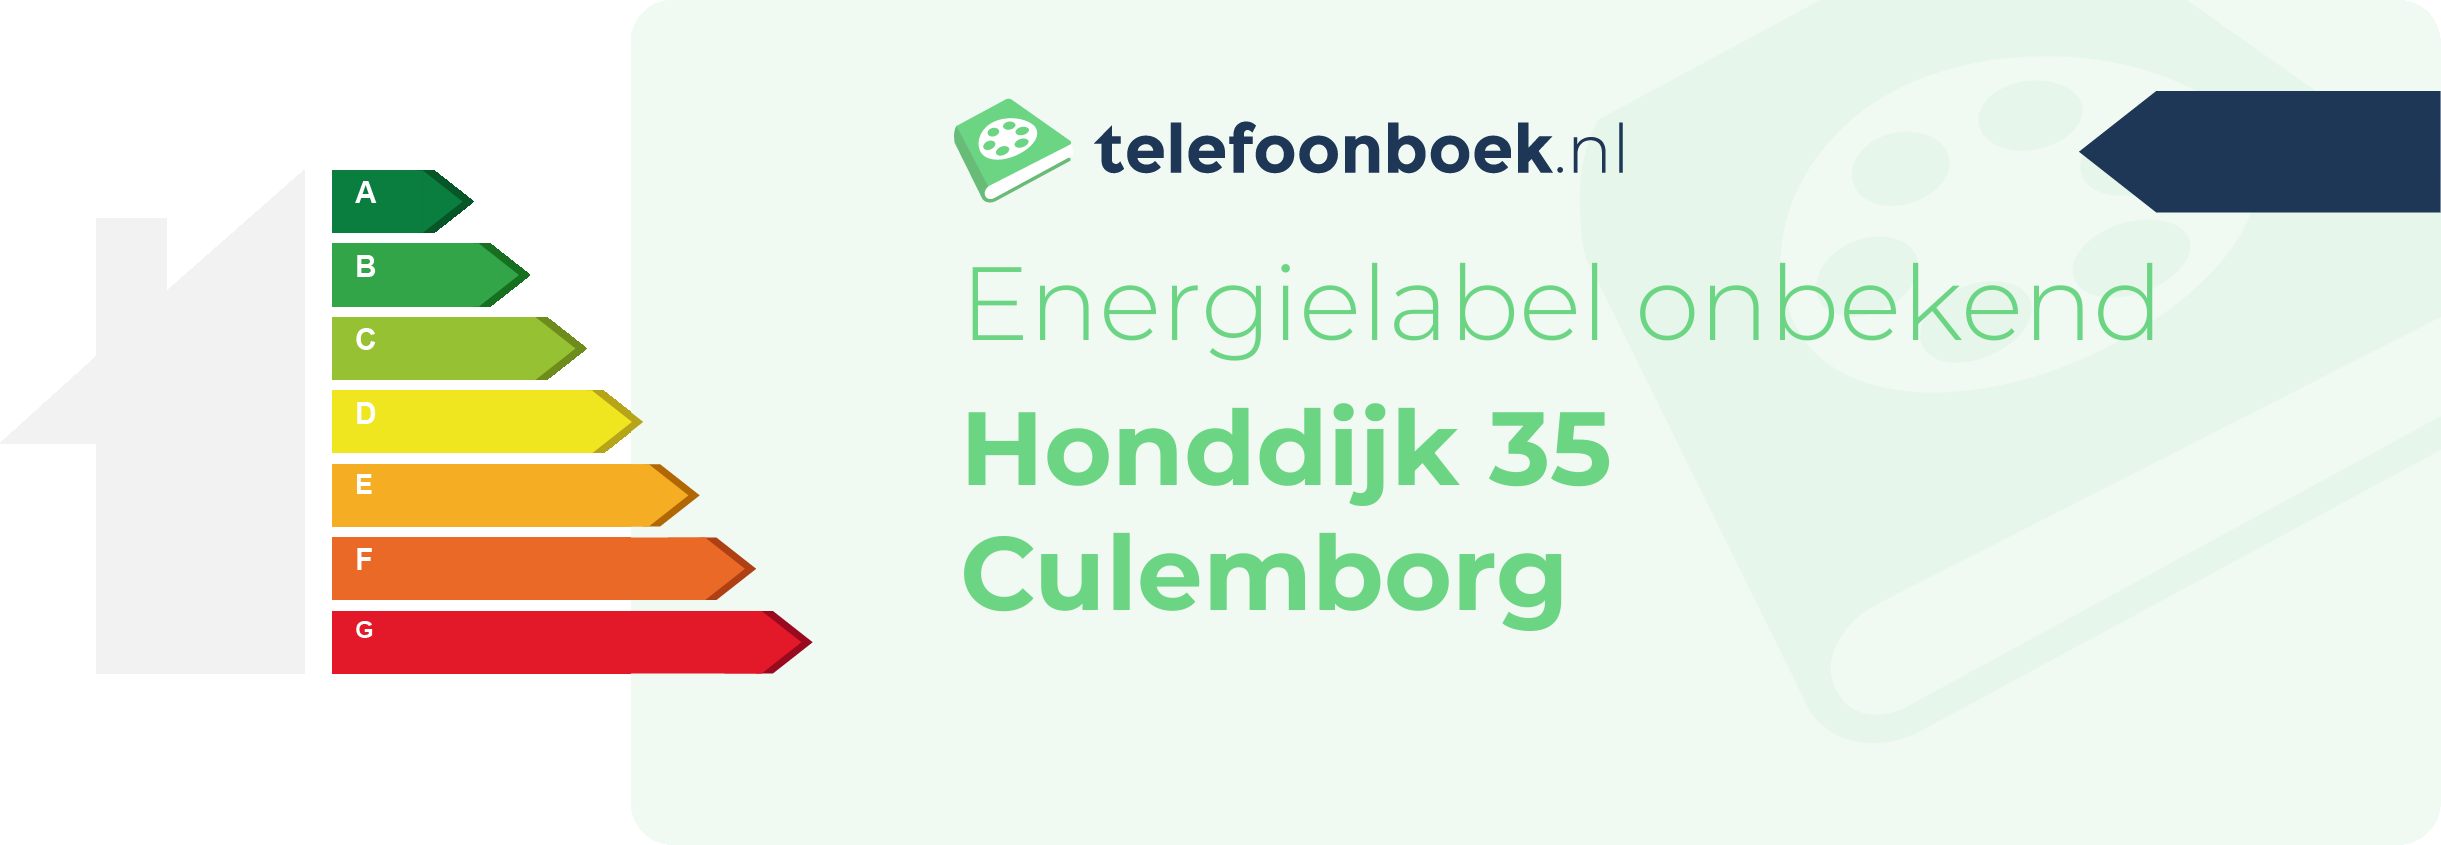 Energielabel Honddijk 35 Culemborg